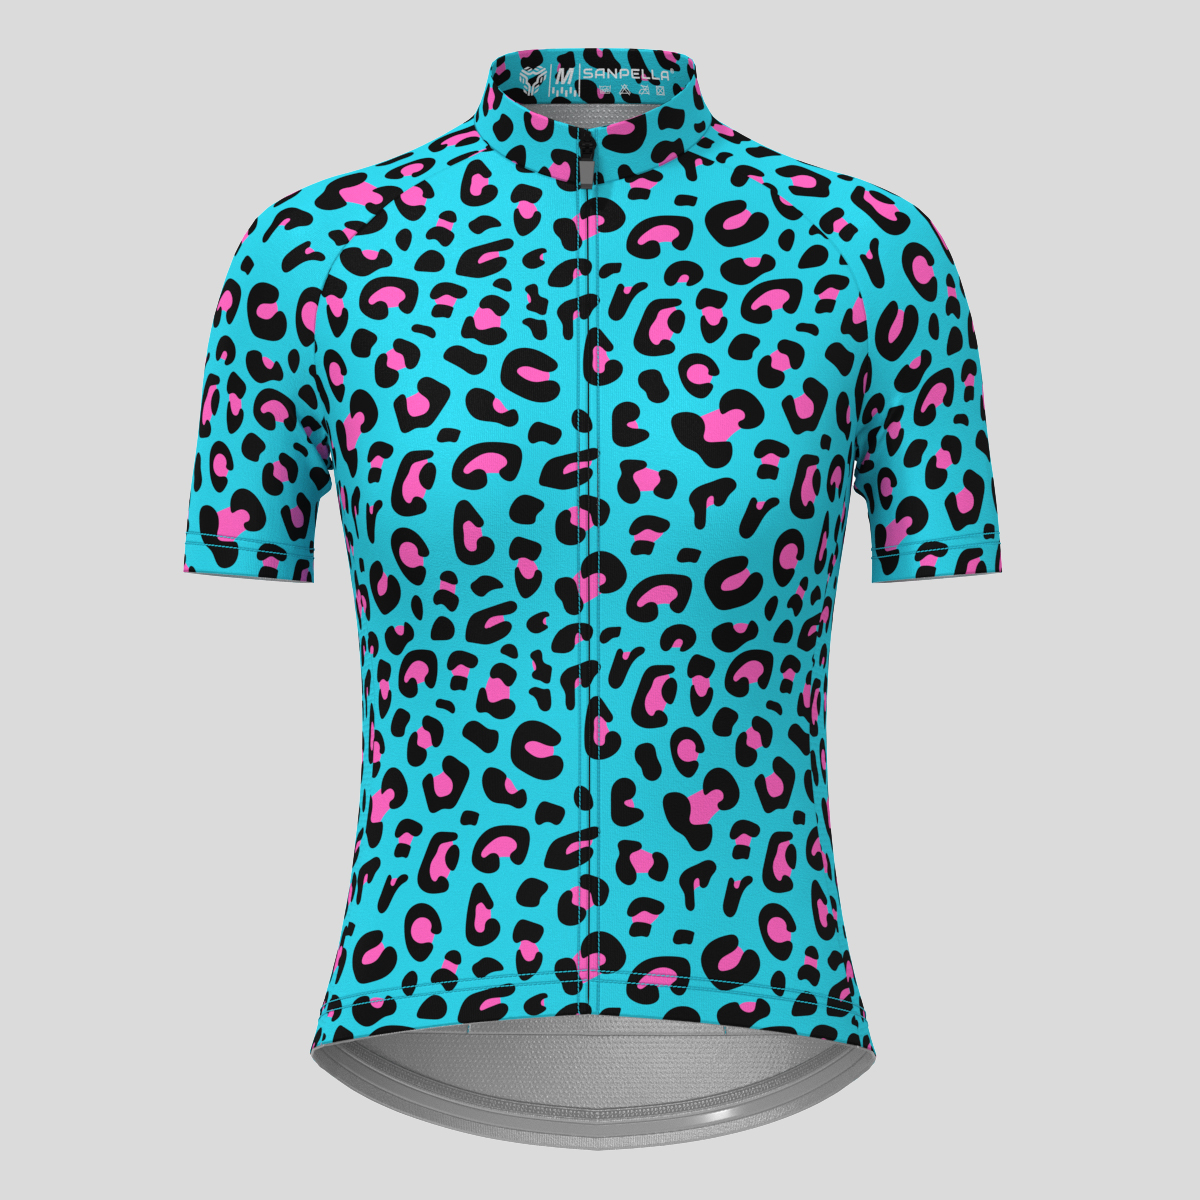 Leopard Print Women's Cycling Jersey - Blue